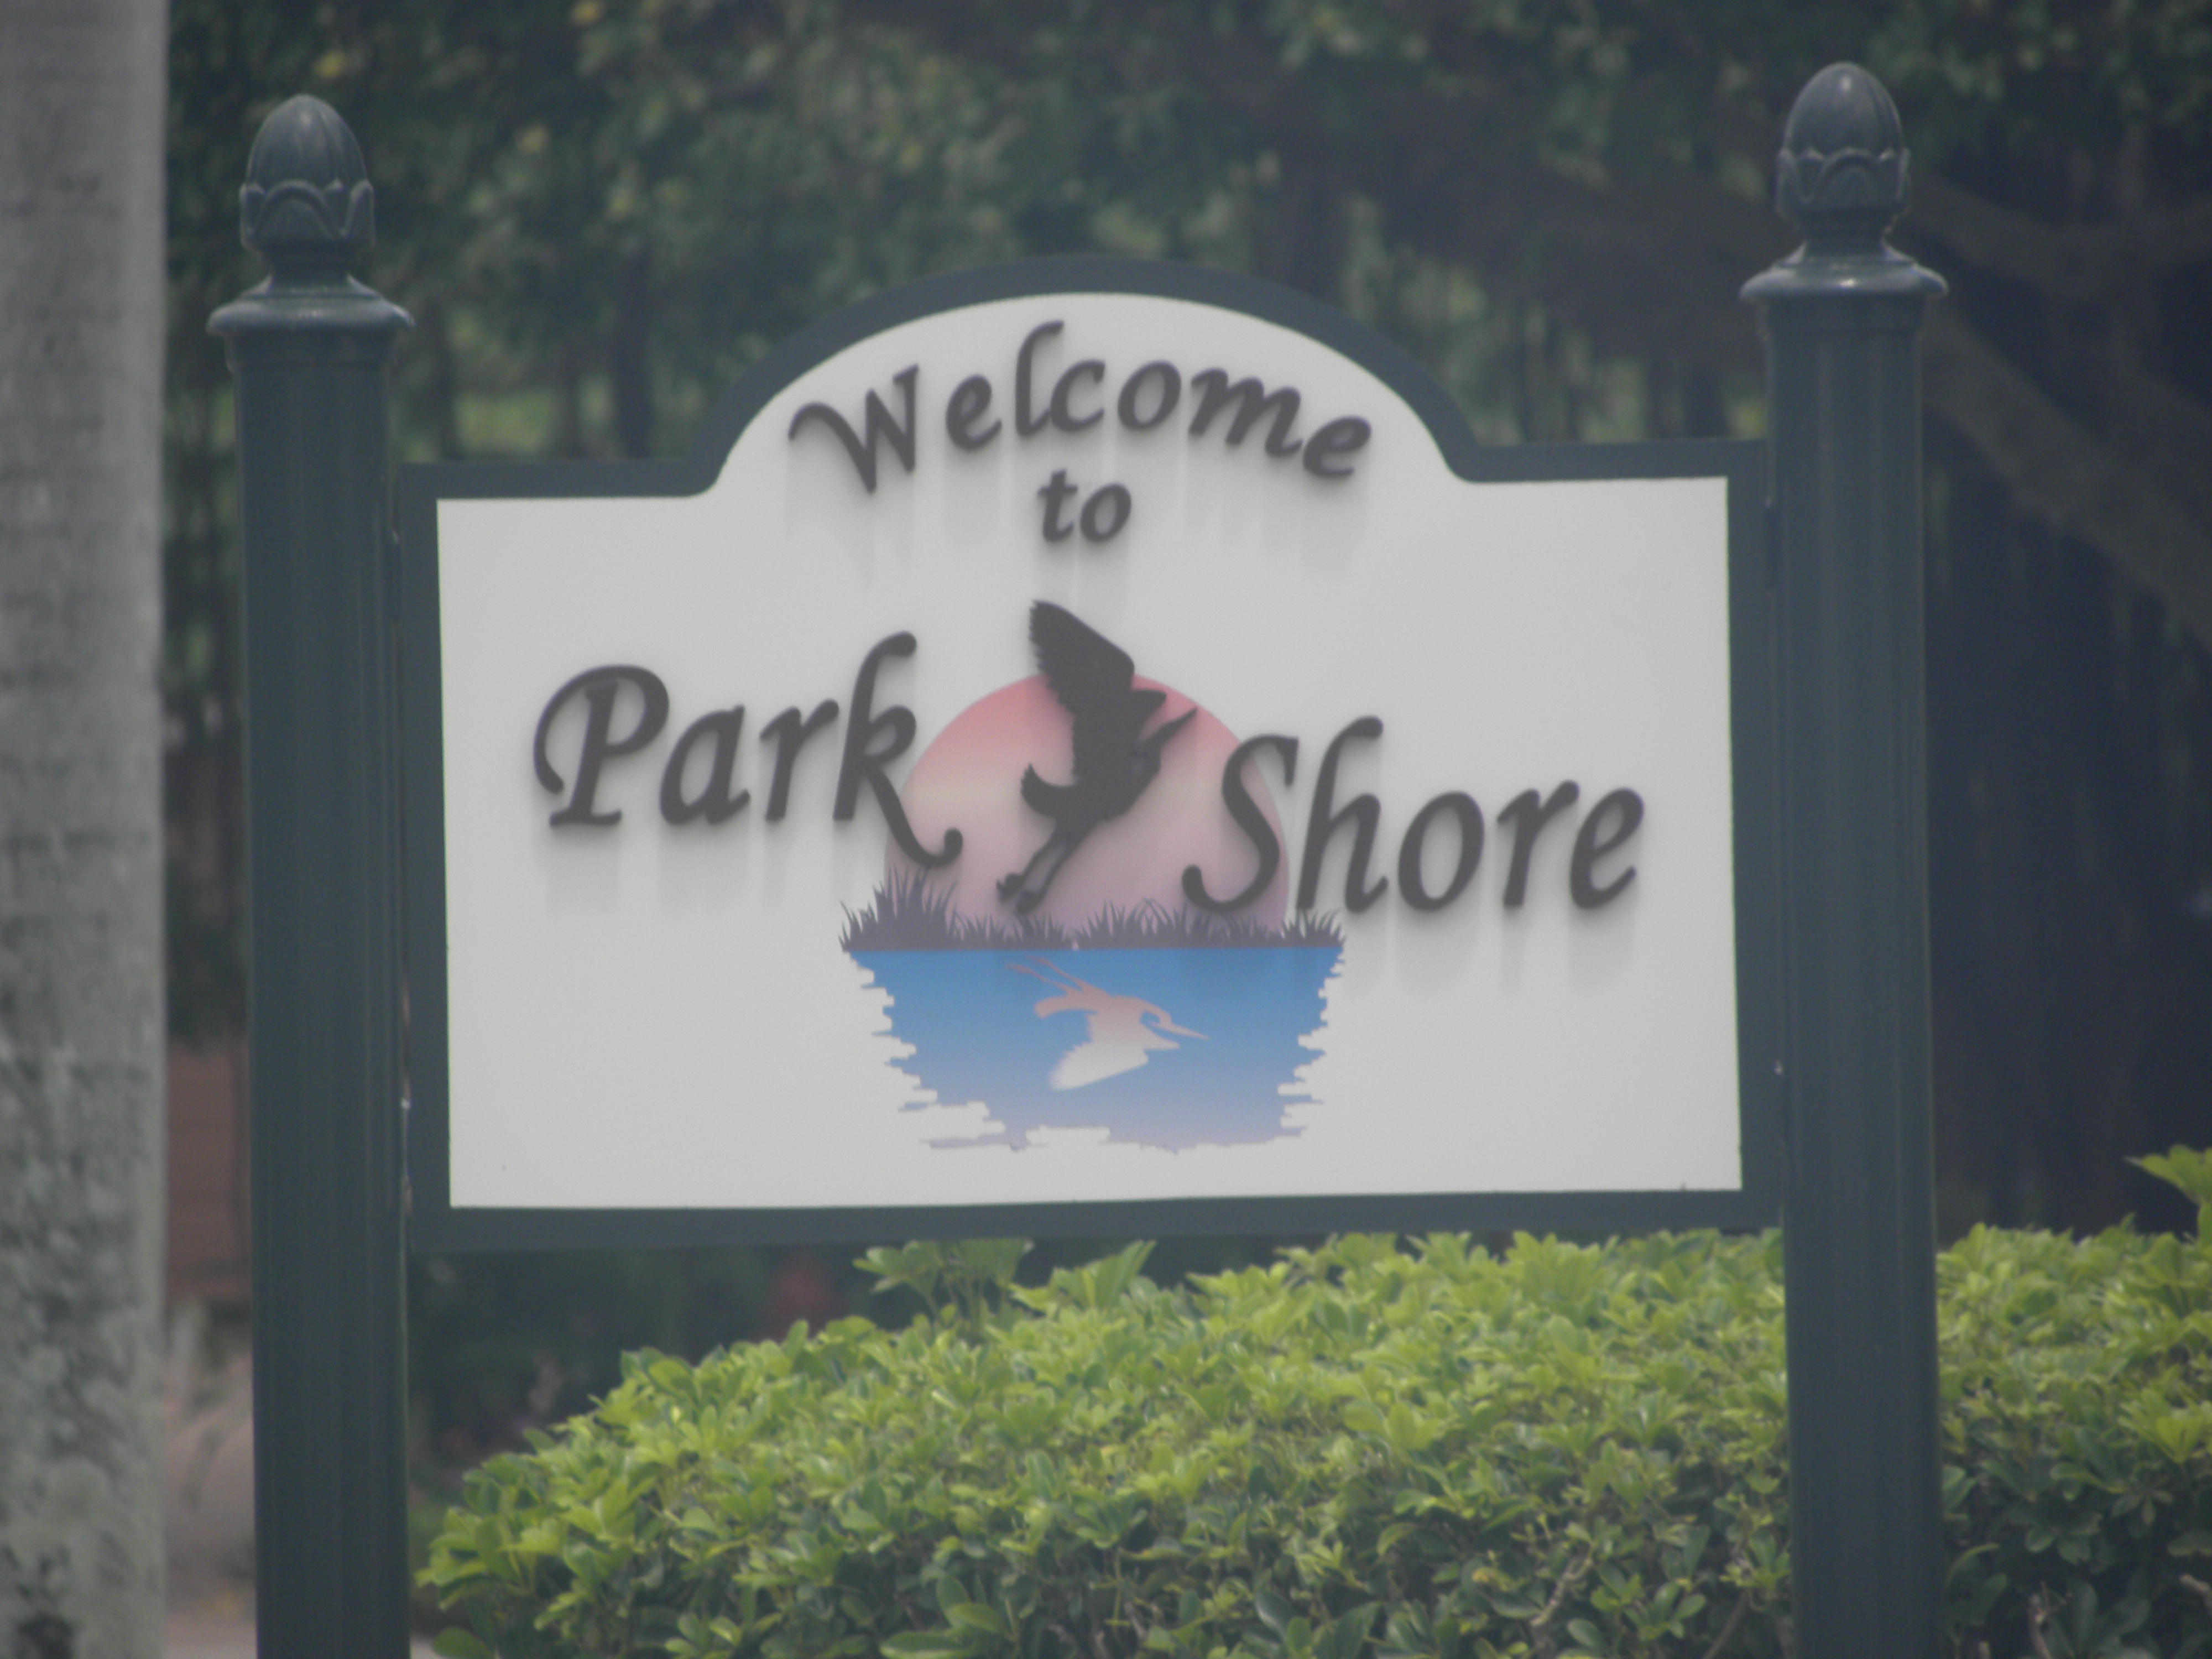 Park Shore